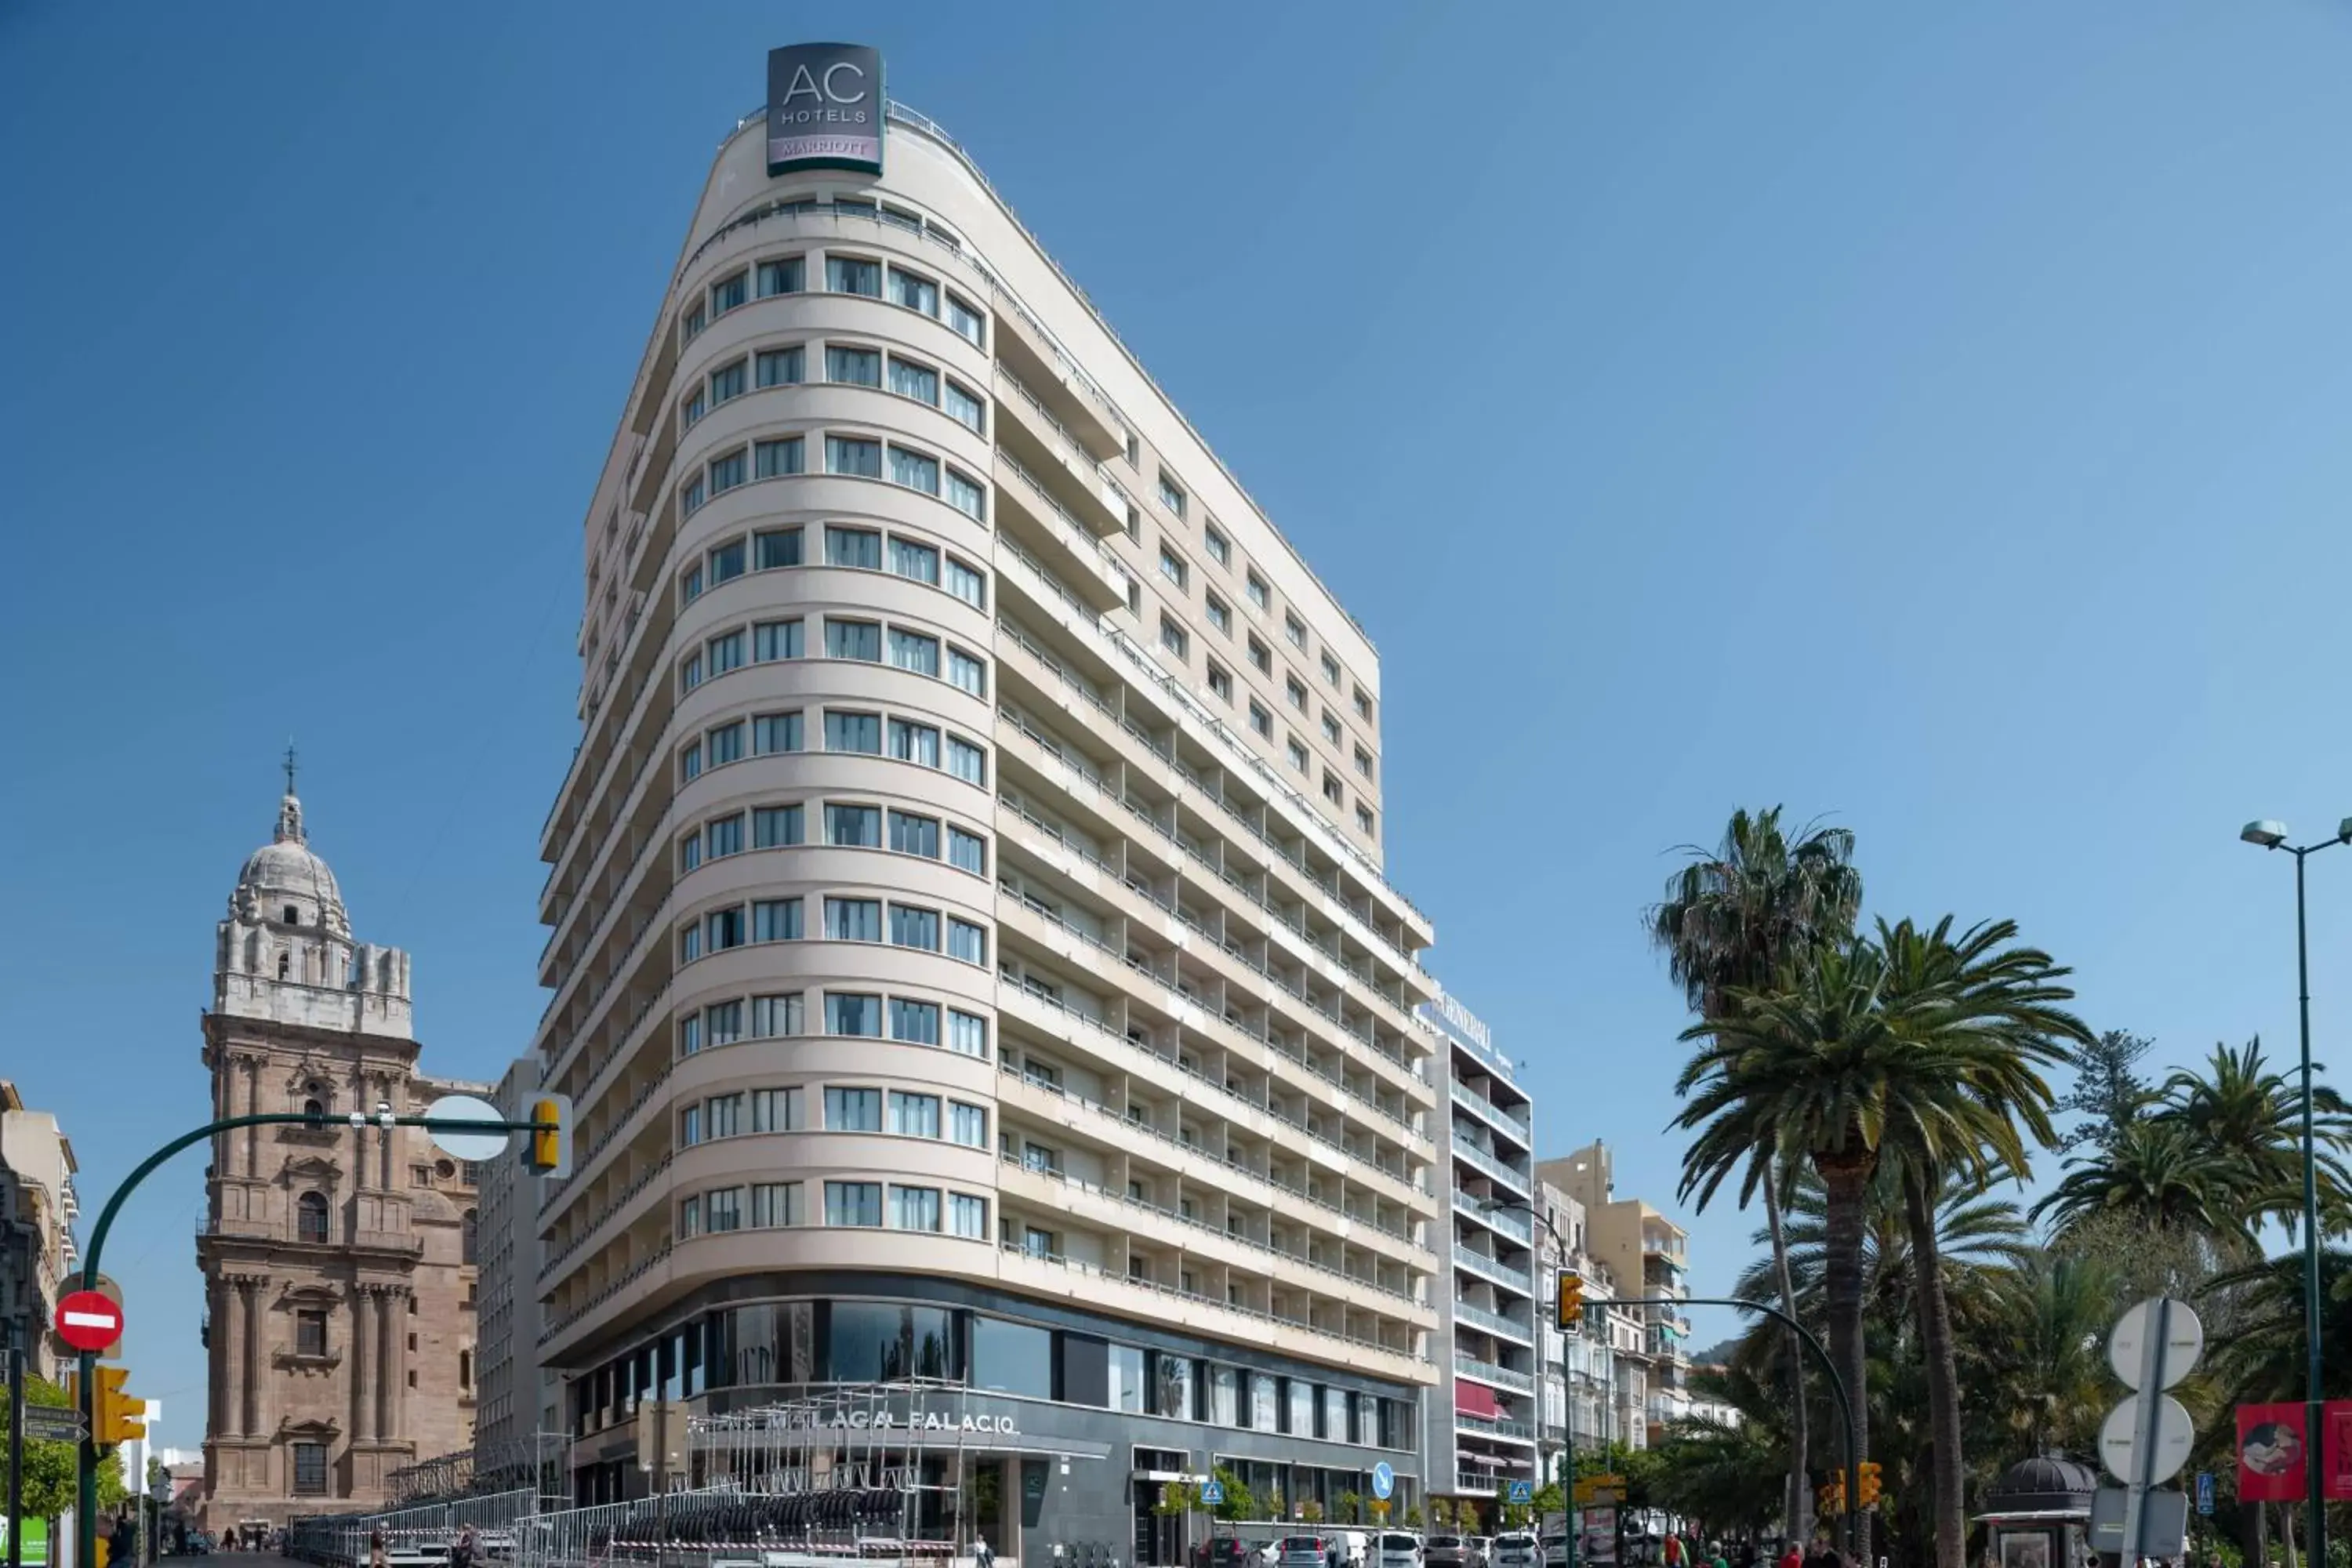 Property building in AC Hotel Málaga Palacio by Marriott